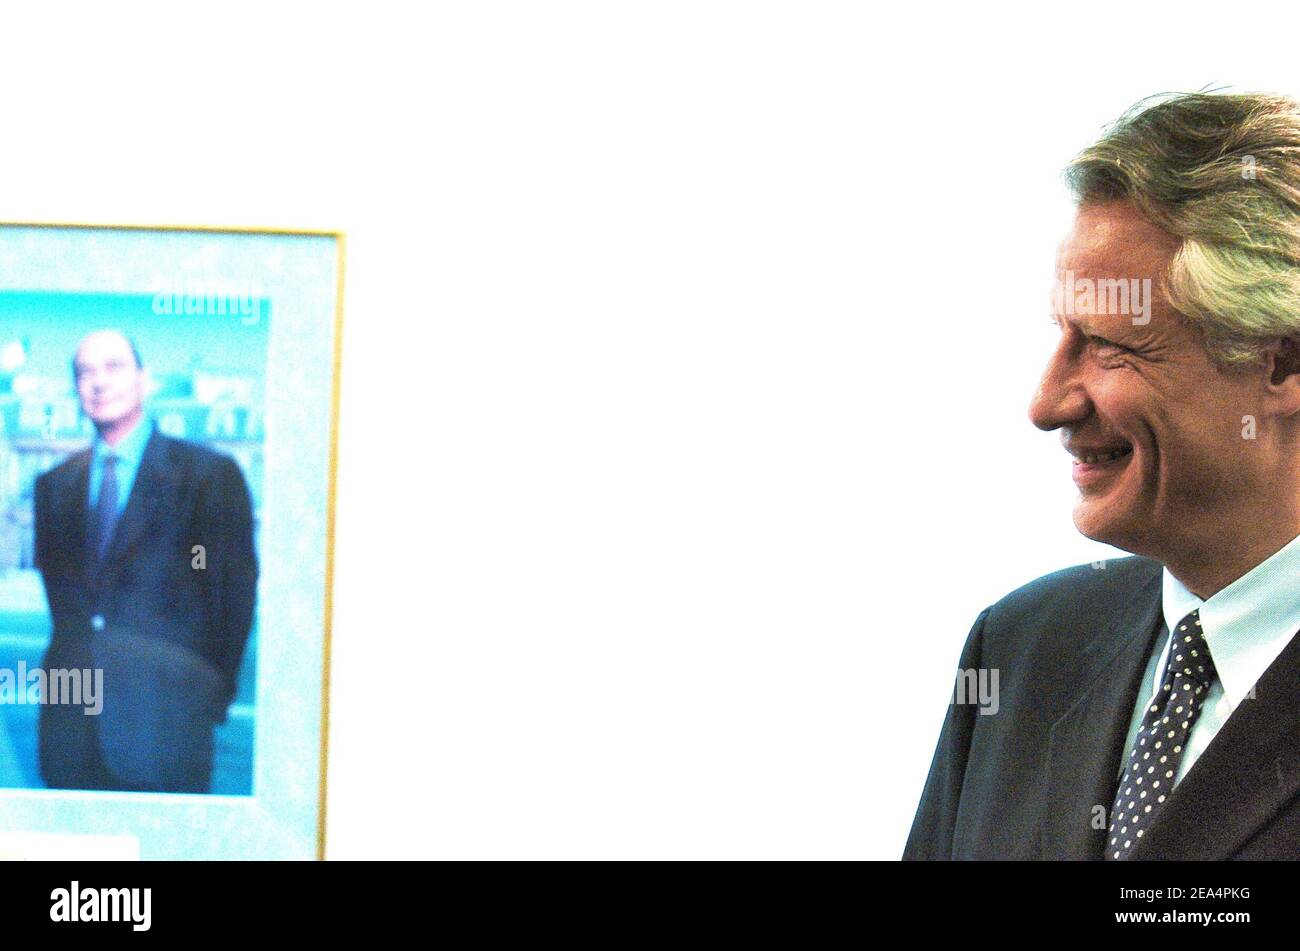 Le Premier ministre français Dominique de Villepin à côté d'une photo du président Jacques Chirac lors d'une visite à l'hôtel de ville d'Arradon, près de vannes, dans l'ouest de la France, le 5 août 2005. Le premier ministre est actuellement en vacances avec sa famille dans la région. Photo de Bruno Klein/ABACAPRESS.COM Banque D'Images